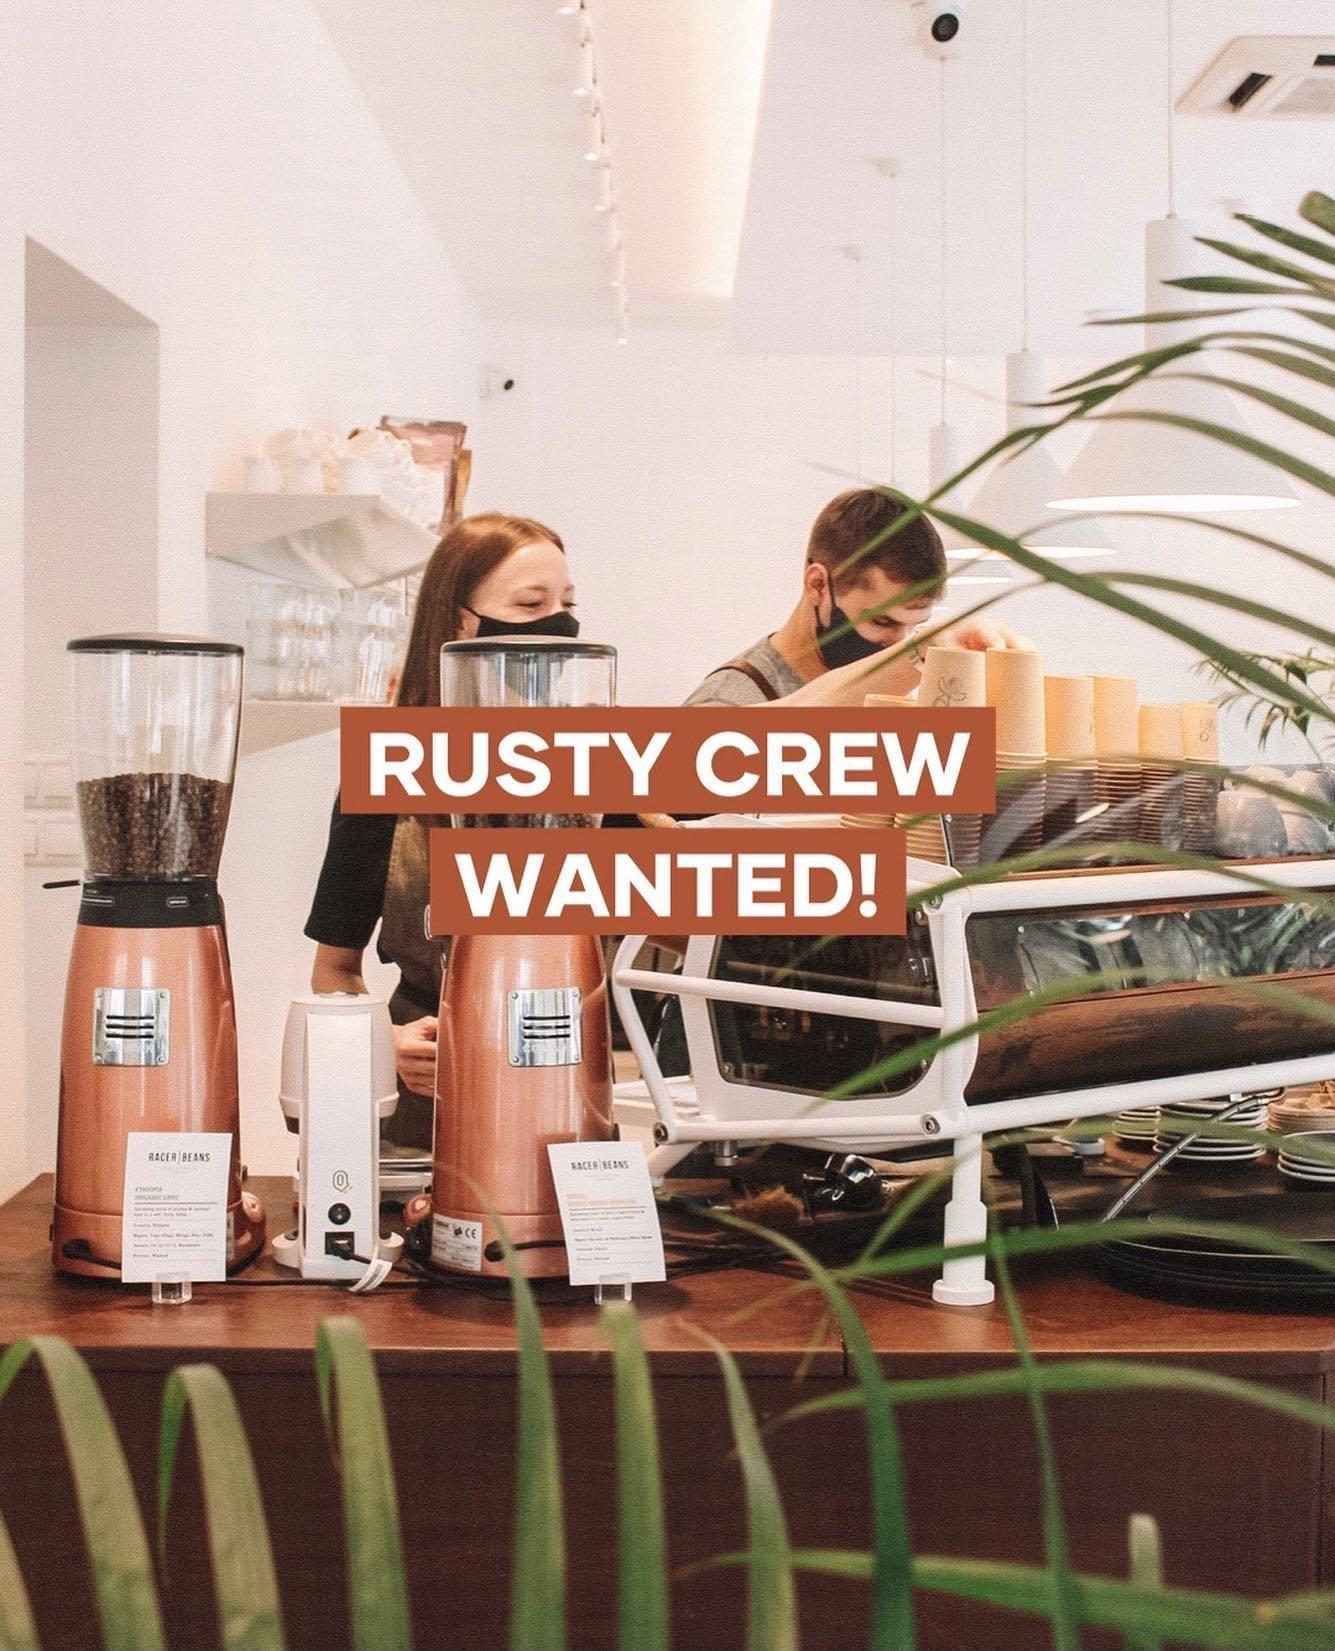 The Rusty Coffee barista állást kínál – barista munka!